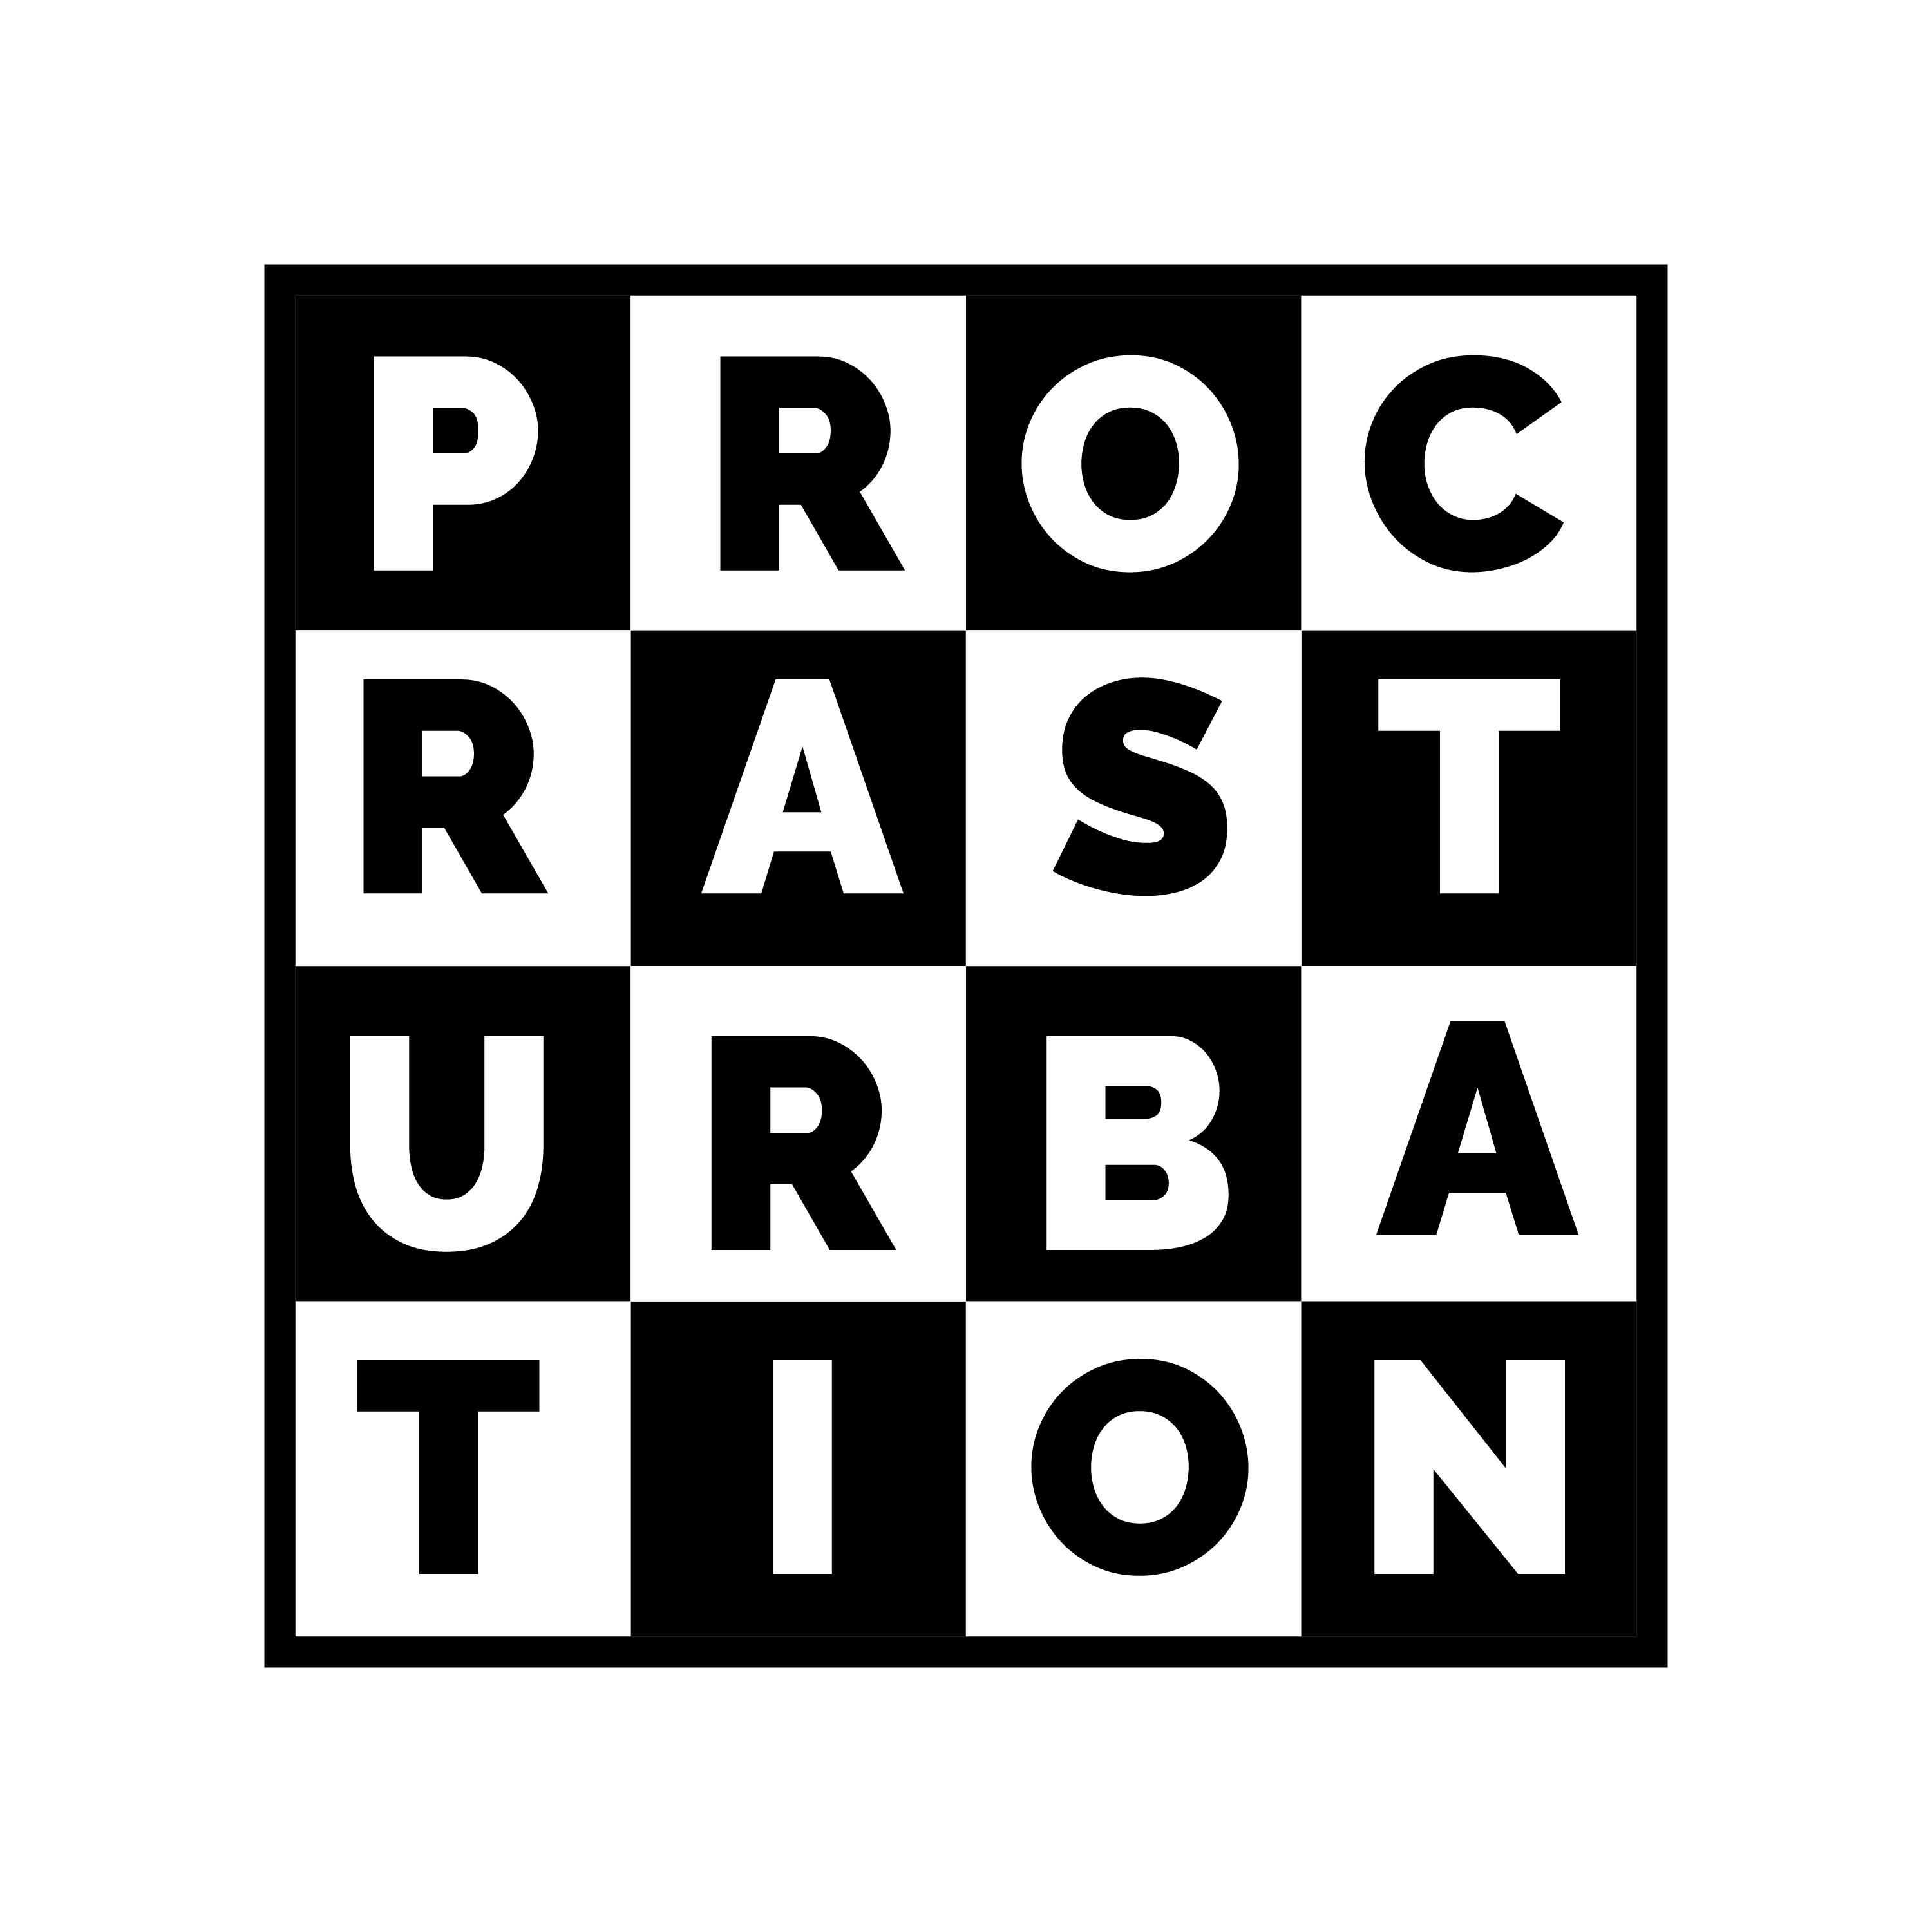 Procrasturbation